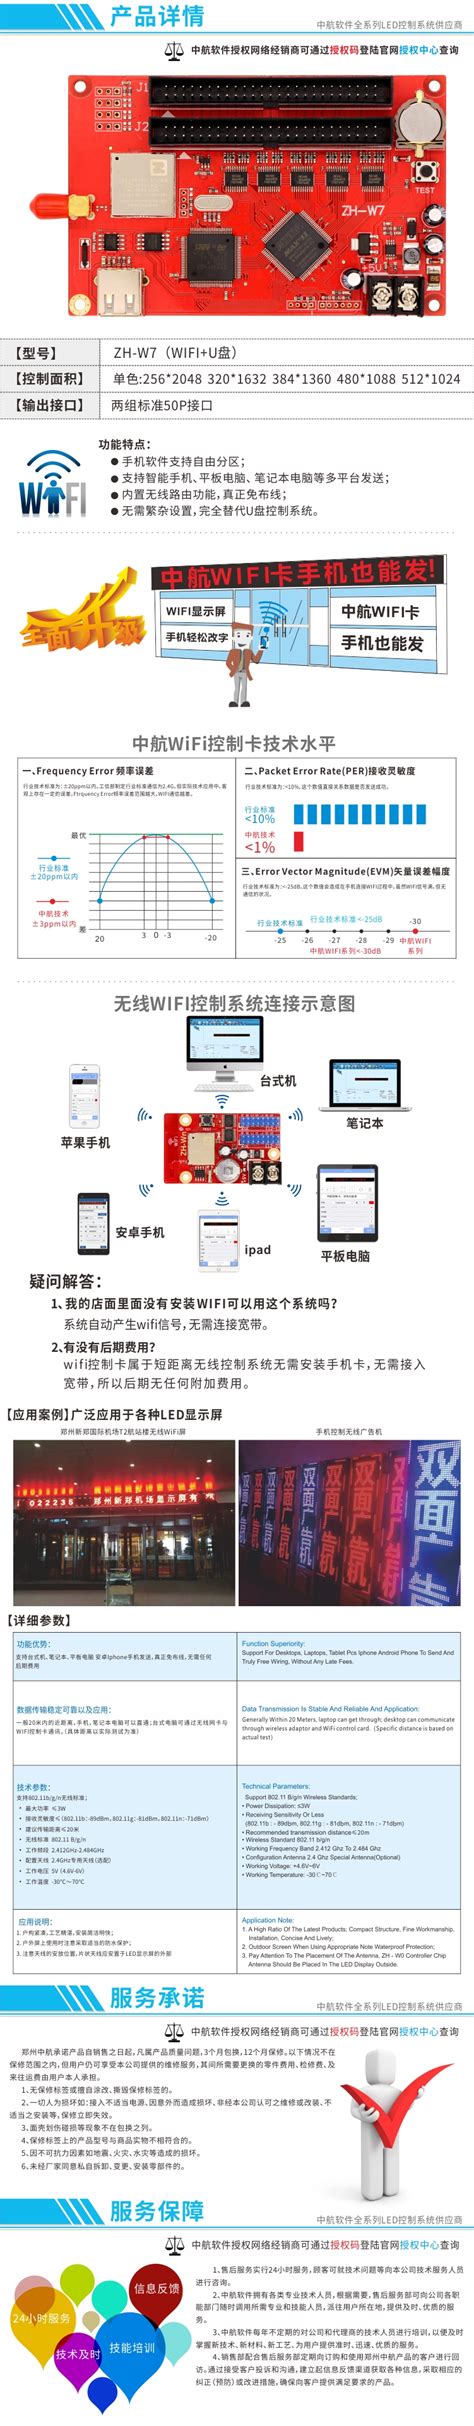 中航单双色控制卡 ZH-W7 - LED显示屏控制系统软件—杭州千眼电子科技有限公司-官网